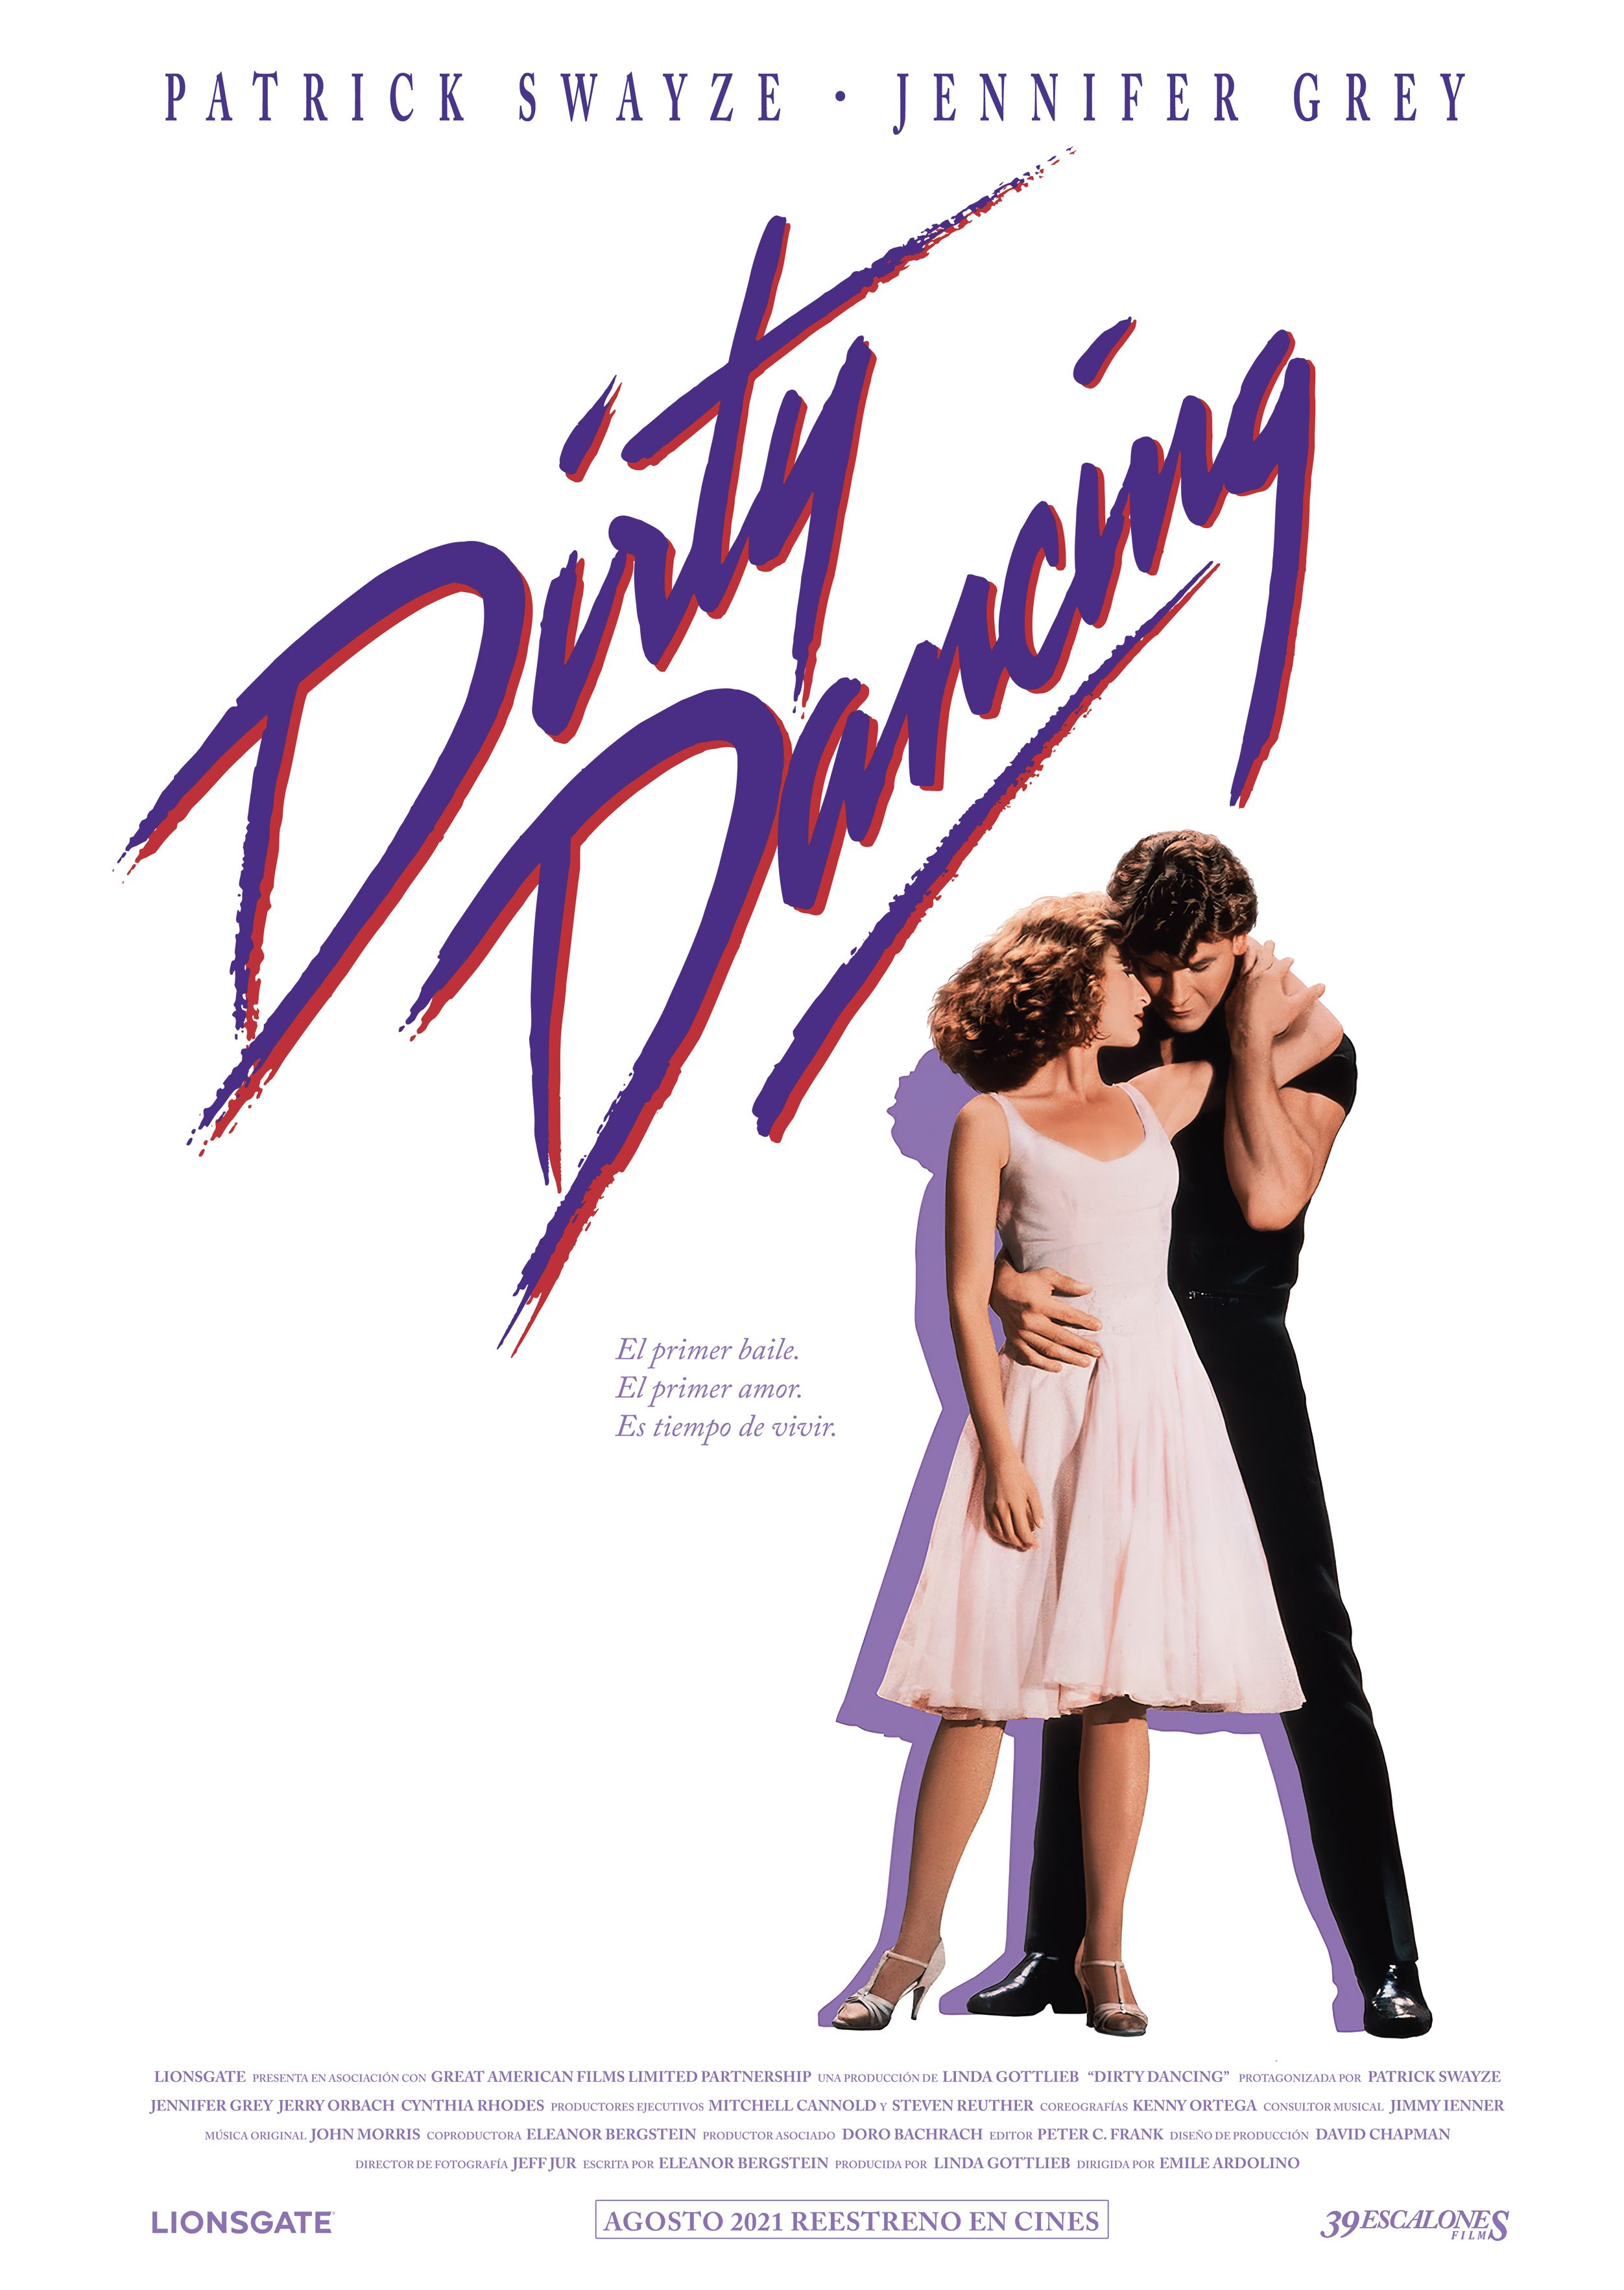 ¿Preparado para bailar? 'Dirty Dancing' se reestrena en cines el 26 de agosto